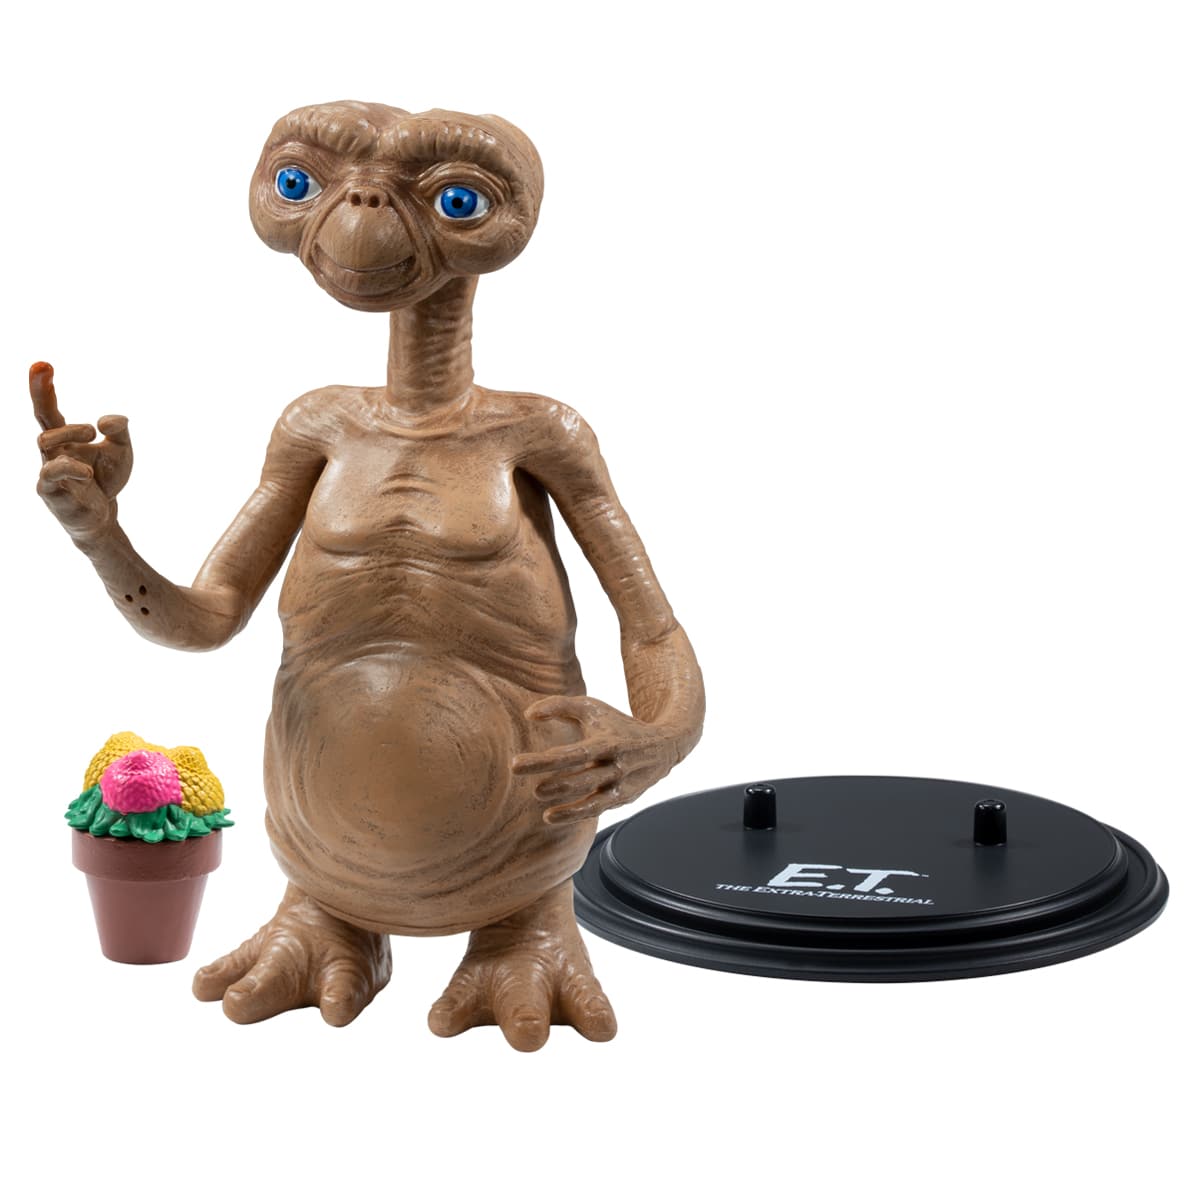 Figurine E.T L'Extra Terrestre Avec Plante 40 ans Anniversaire Du Film Culte de Steven Spielberg